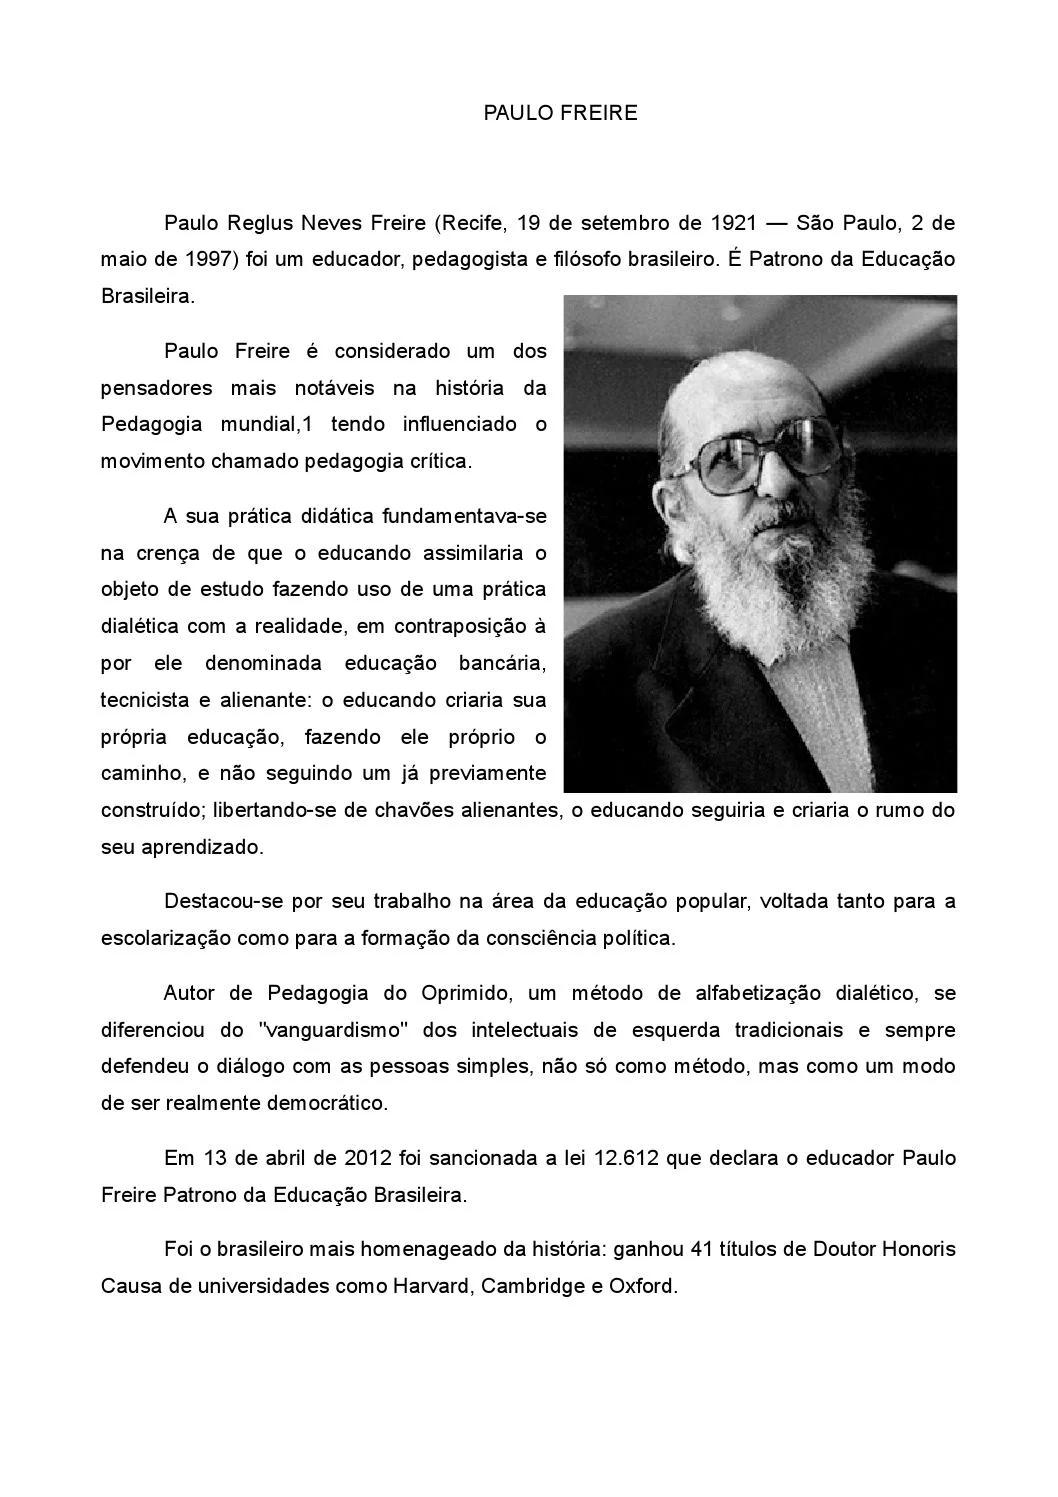 biografia paulo freire resumo - Quién fue Paulo Freire y cuál fue su aporte a la educación